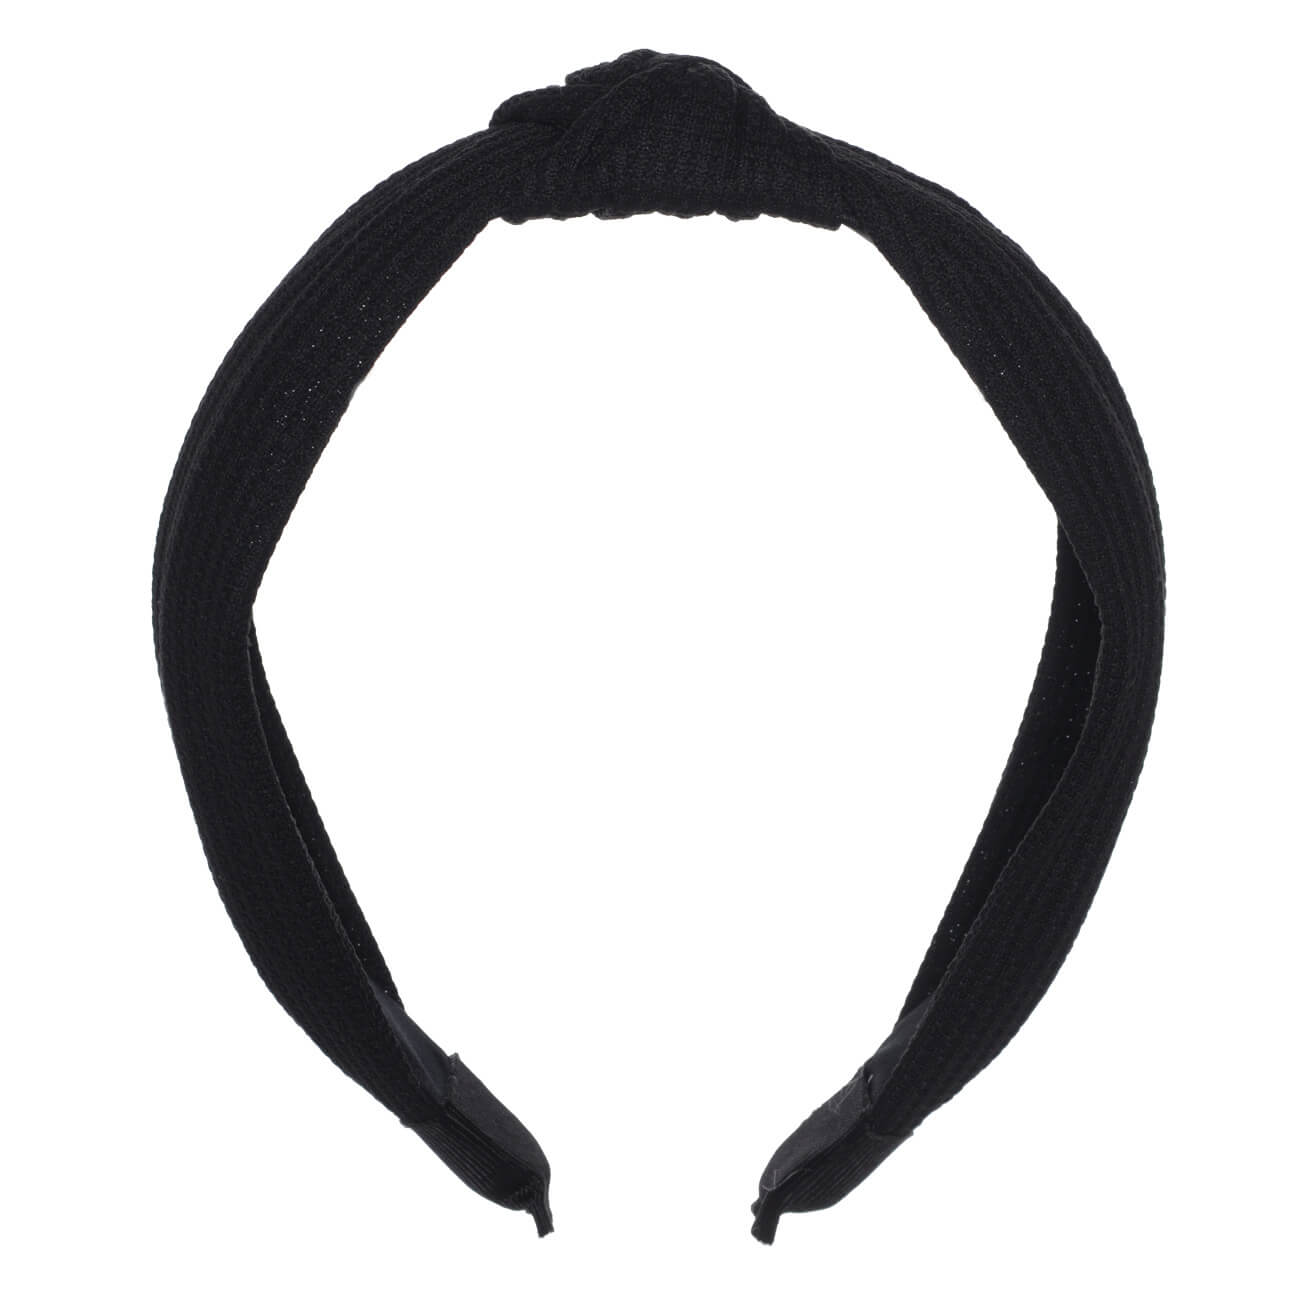 Ободок для волос, 13х15 см, полиэстер/пластик, черный, Basic карнавальный ободок бантик с ными прядями